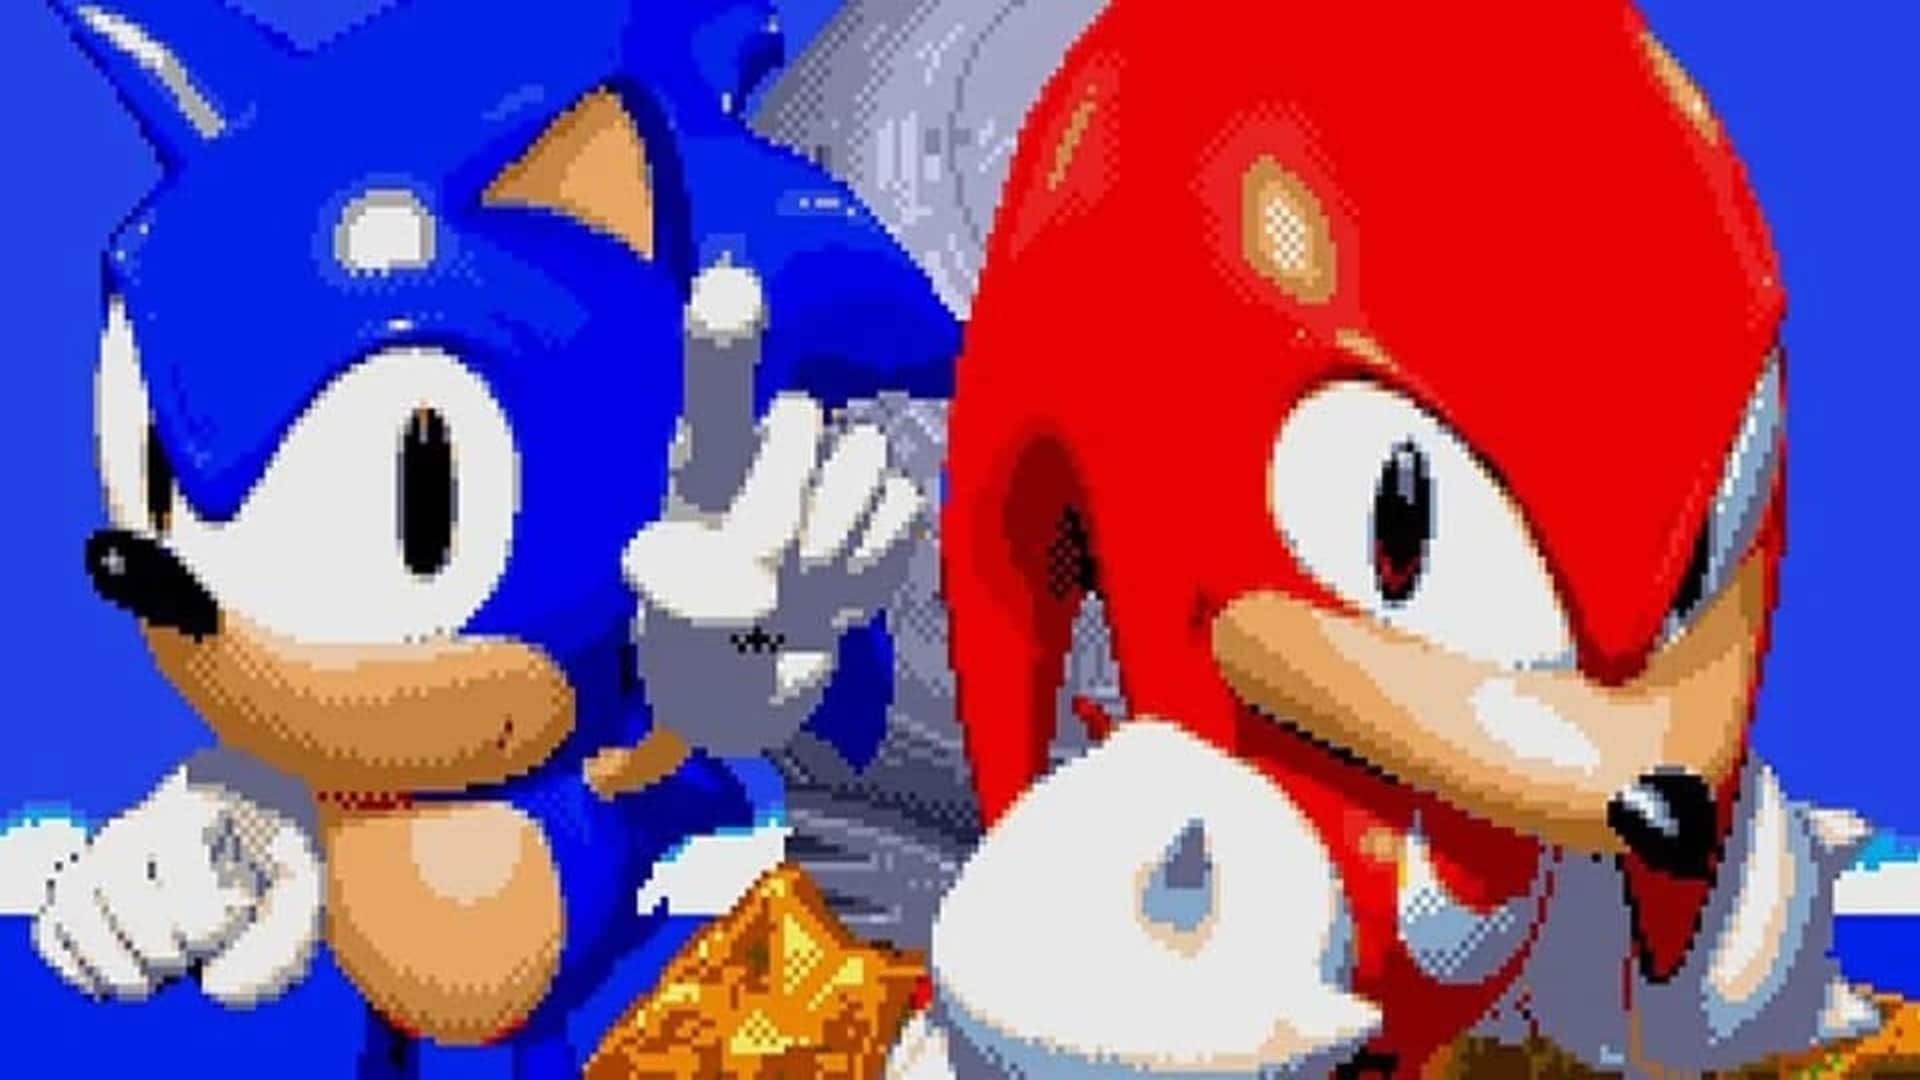 Un fan recrea el encuentro de Sonic y Knuckles de la película Sonic 2 en el Sonic 3 y Knuckles original, GamersRD